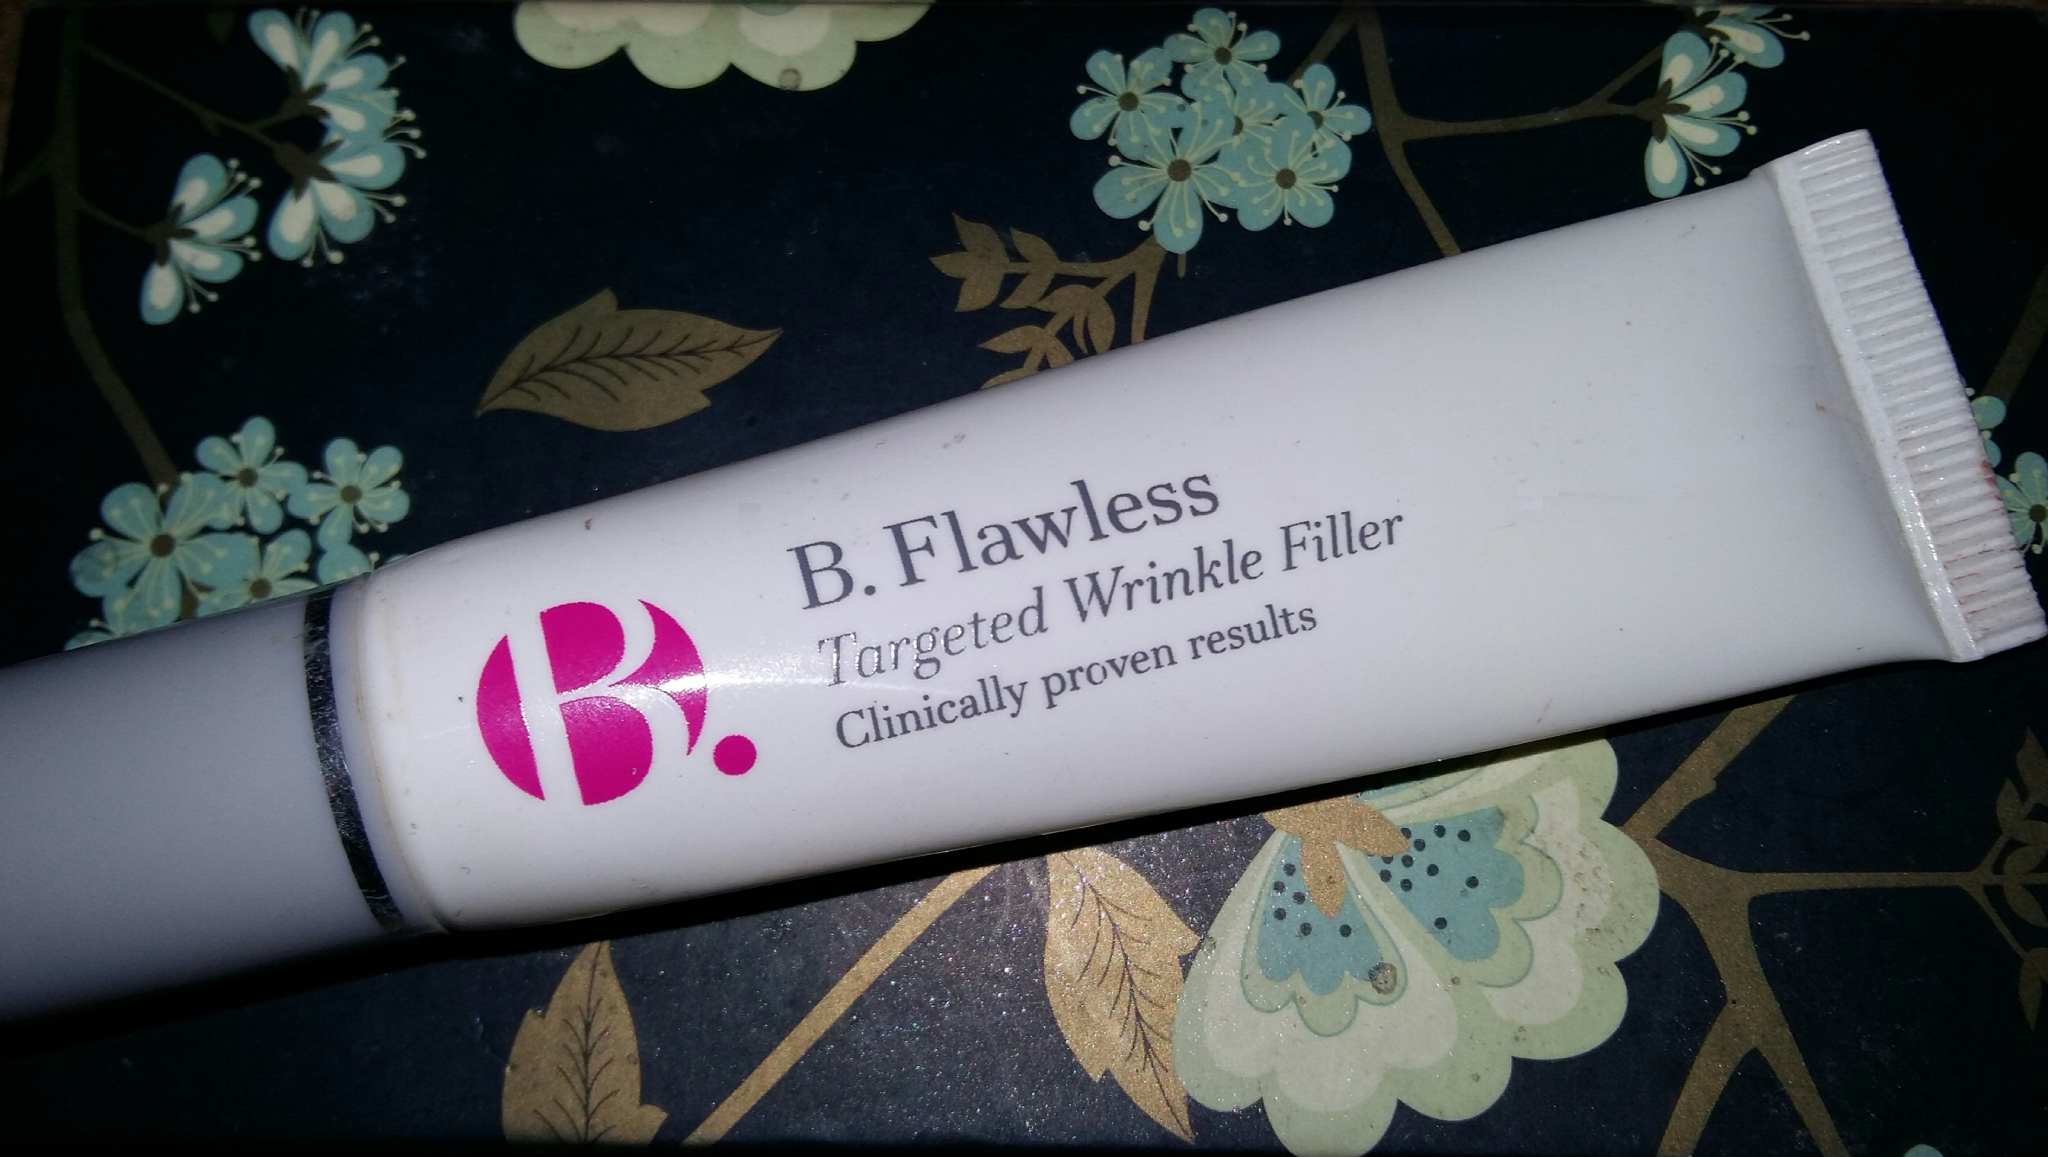 B.Flawless wrinkle filler tube